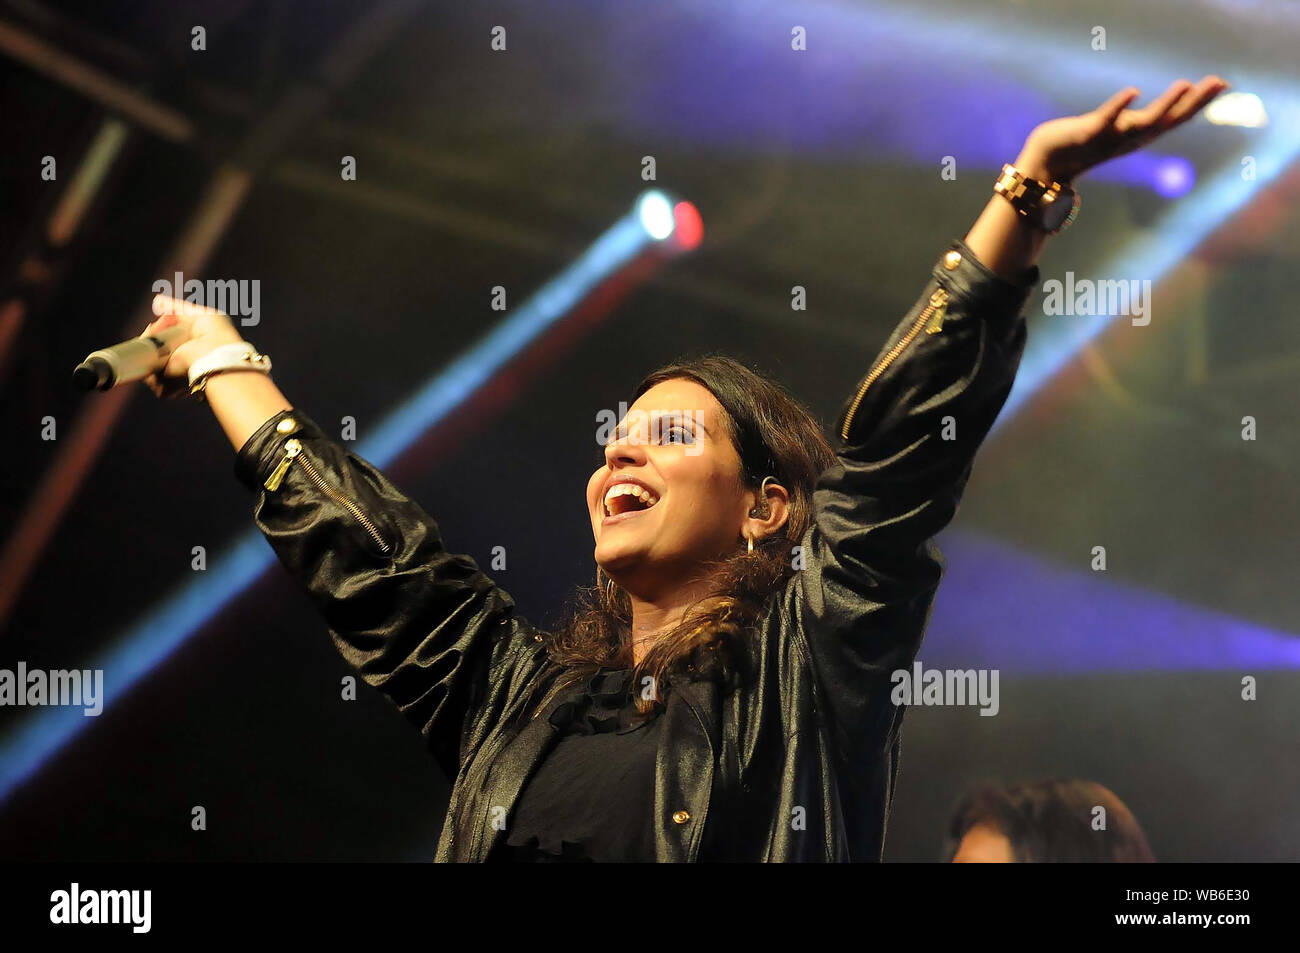 Rio de Janeiro, Brésil, le 1er mai 2013 la chanteuse Aline Barros, lors de son spectacle au Festival de Prommessas sur la place Zé Garoto, dans la ville de São Gonçalo. Banque D'Images